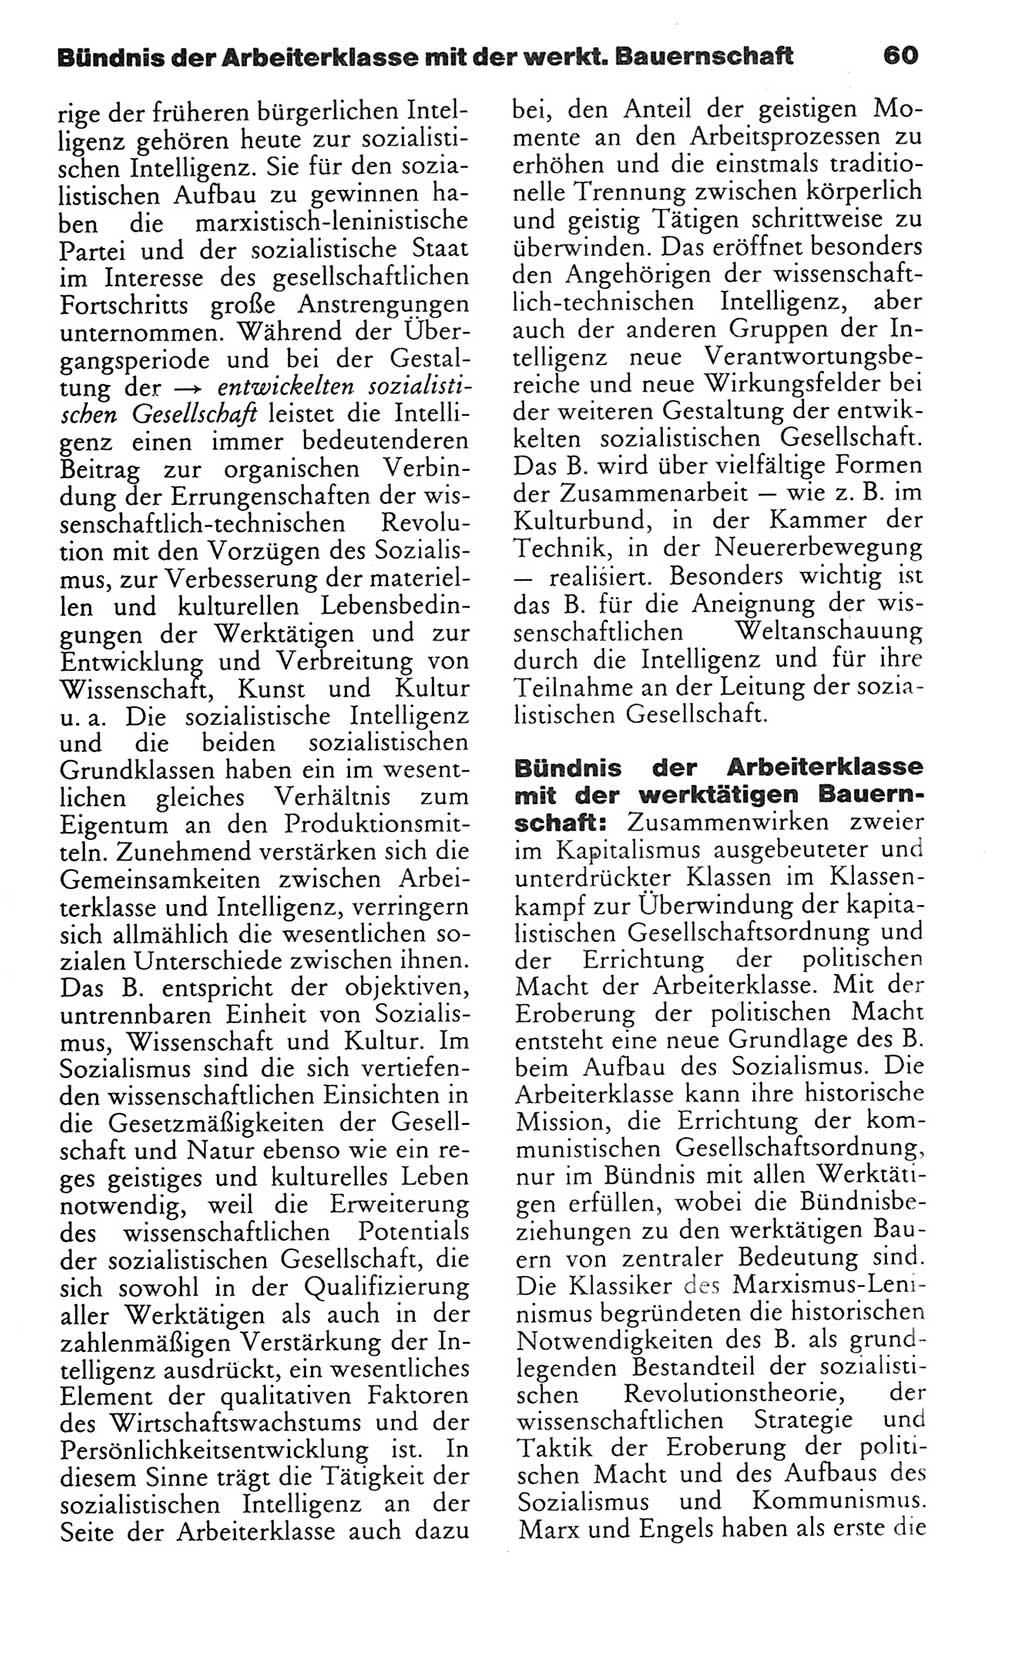 Wörterbuch des wissenschaftlichen Kommunismus [Deutsche Demokratische Republik (DDR)] 1982, Seite 60 (Wb. wiss. Komm. DDR 1982, S. 60)